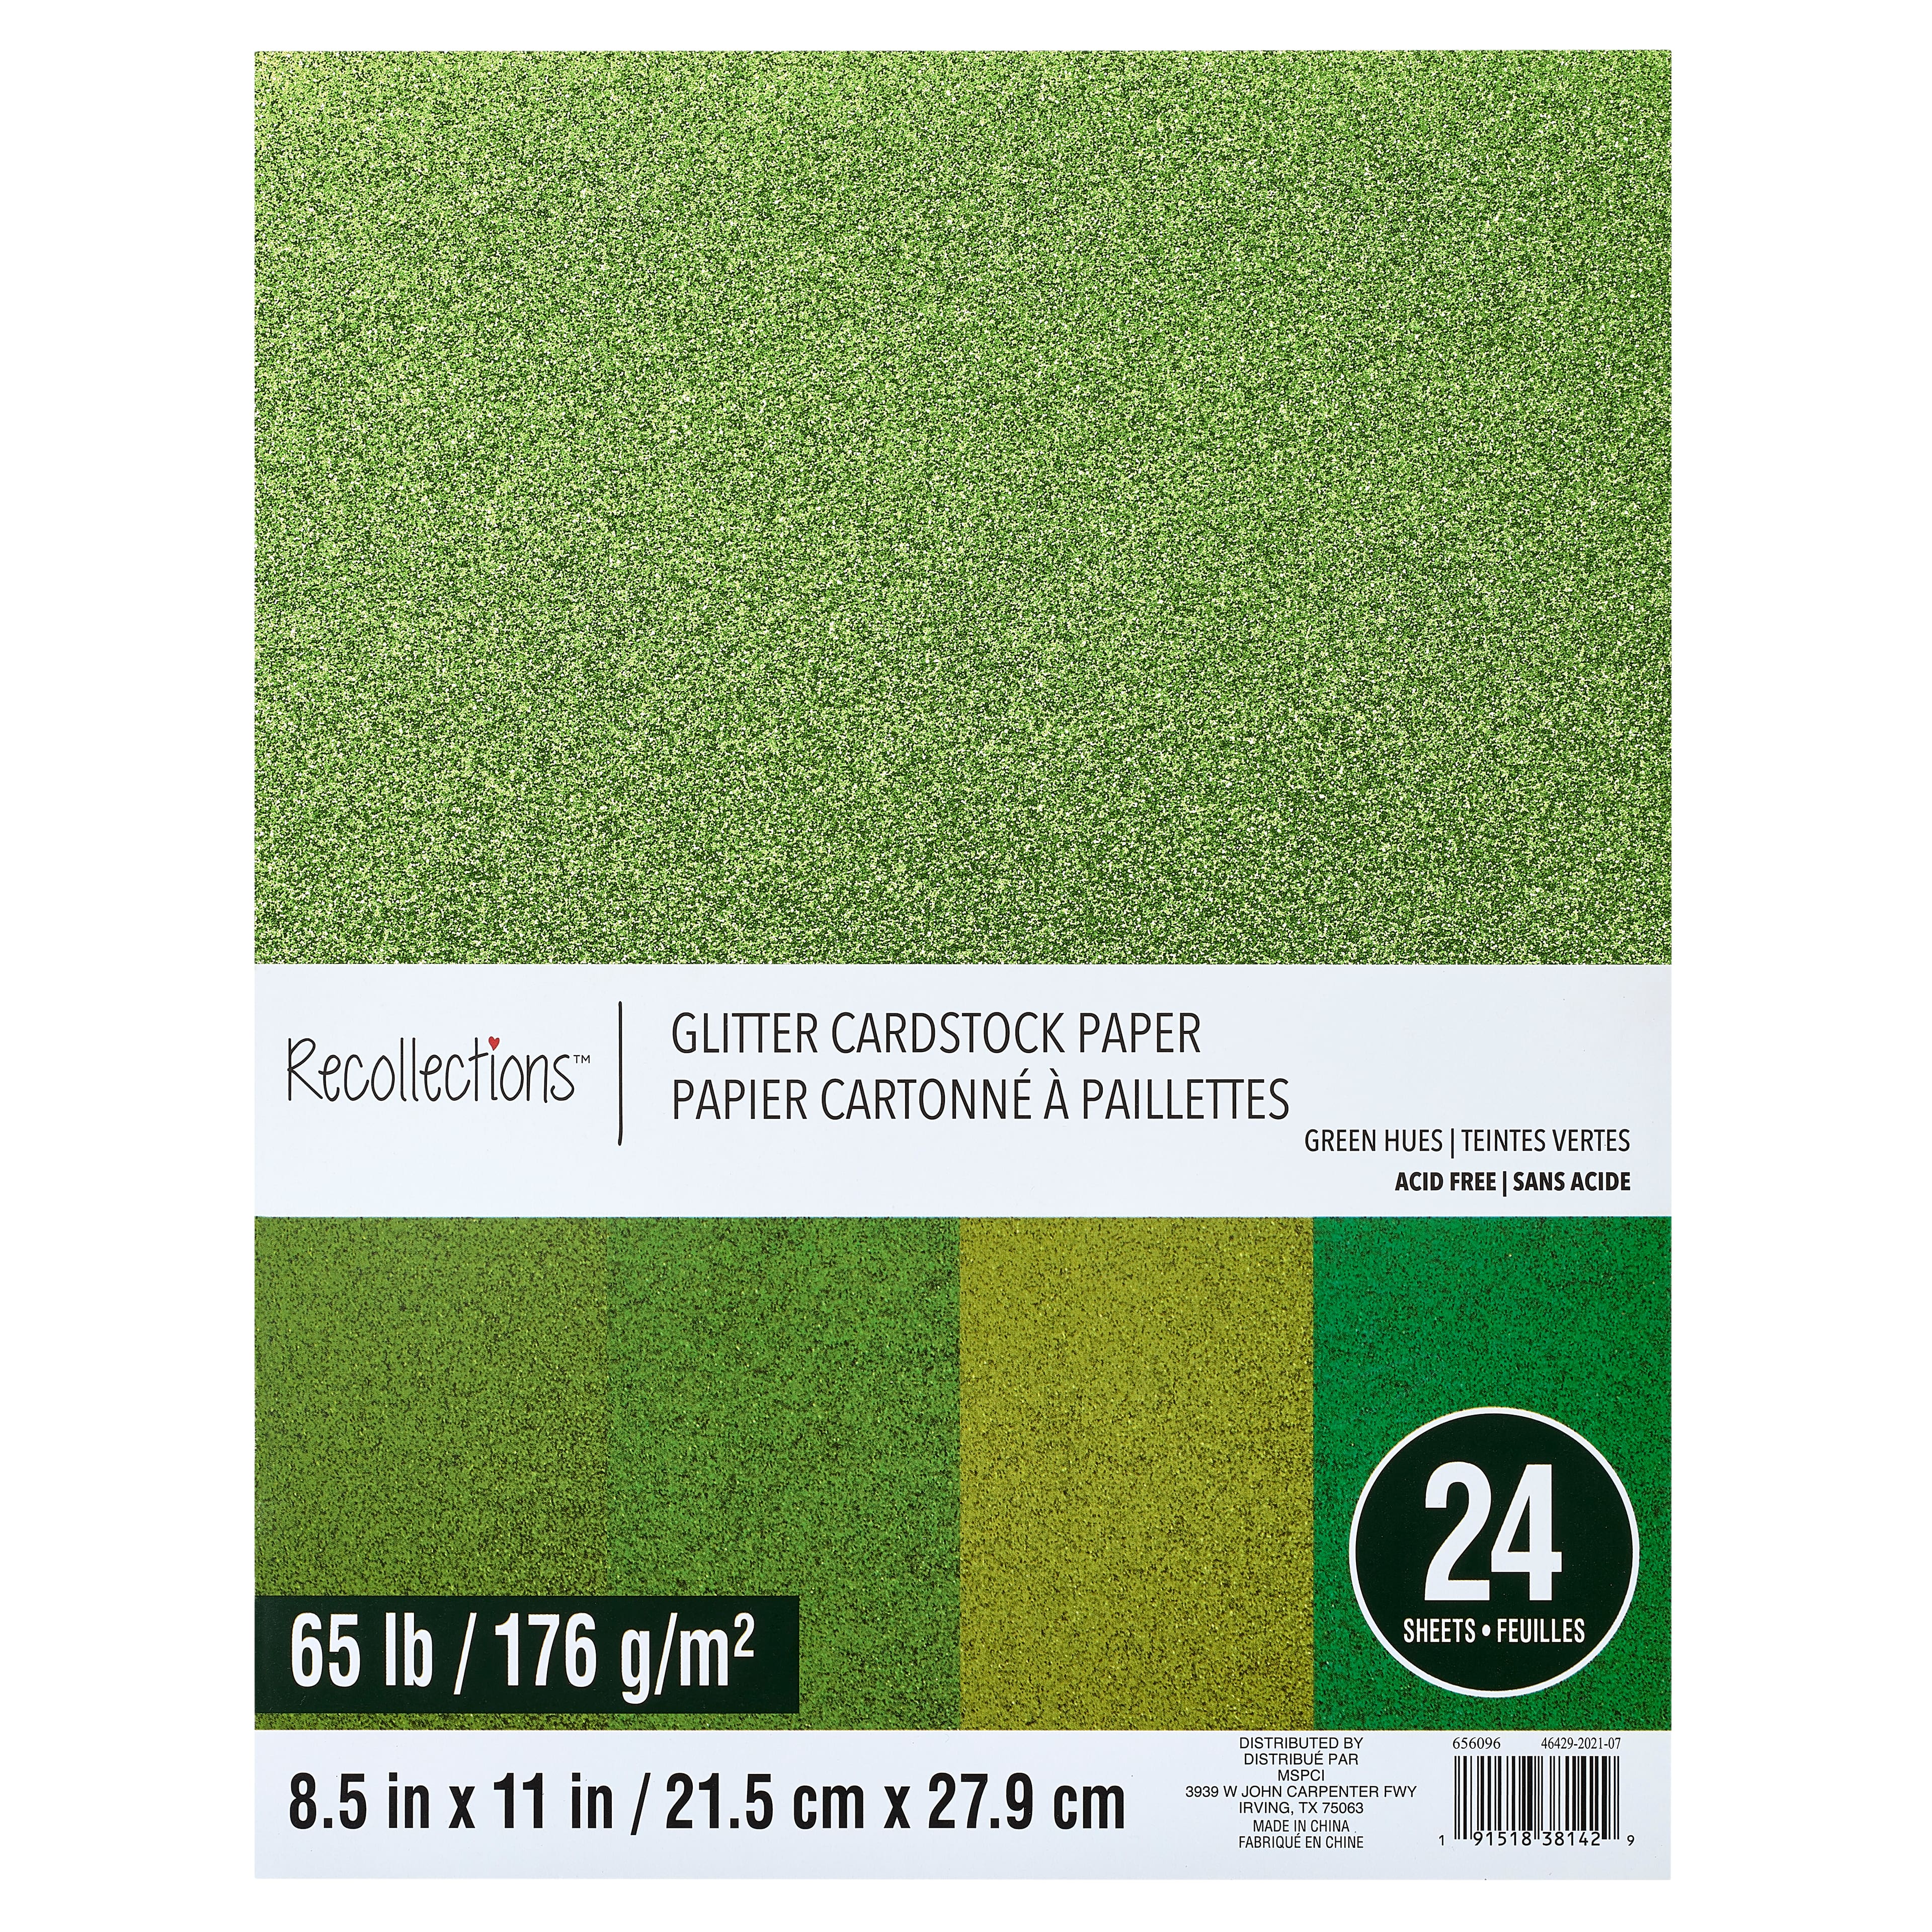 Jam Paper Brite Hue 65lb Cardstock 8.5 X 11 50pk - Green : Target